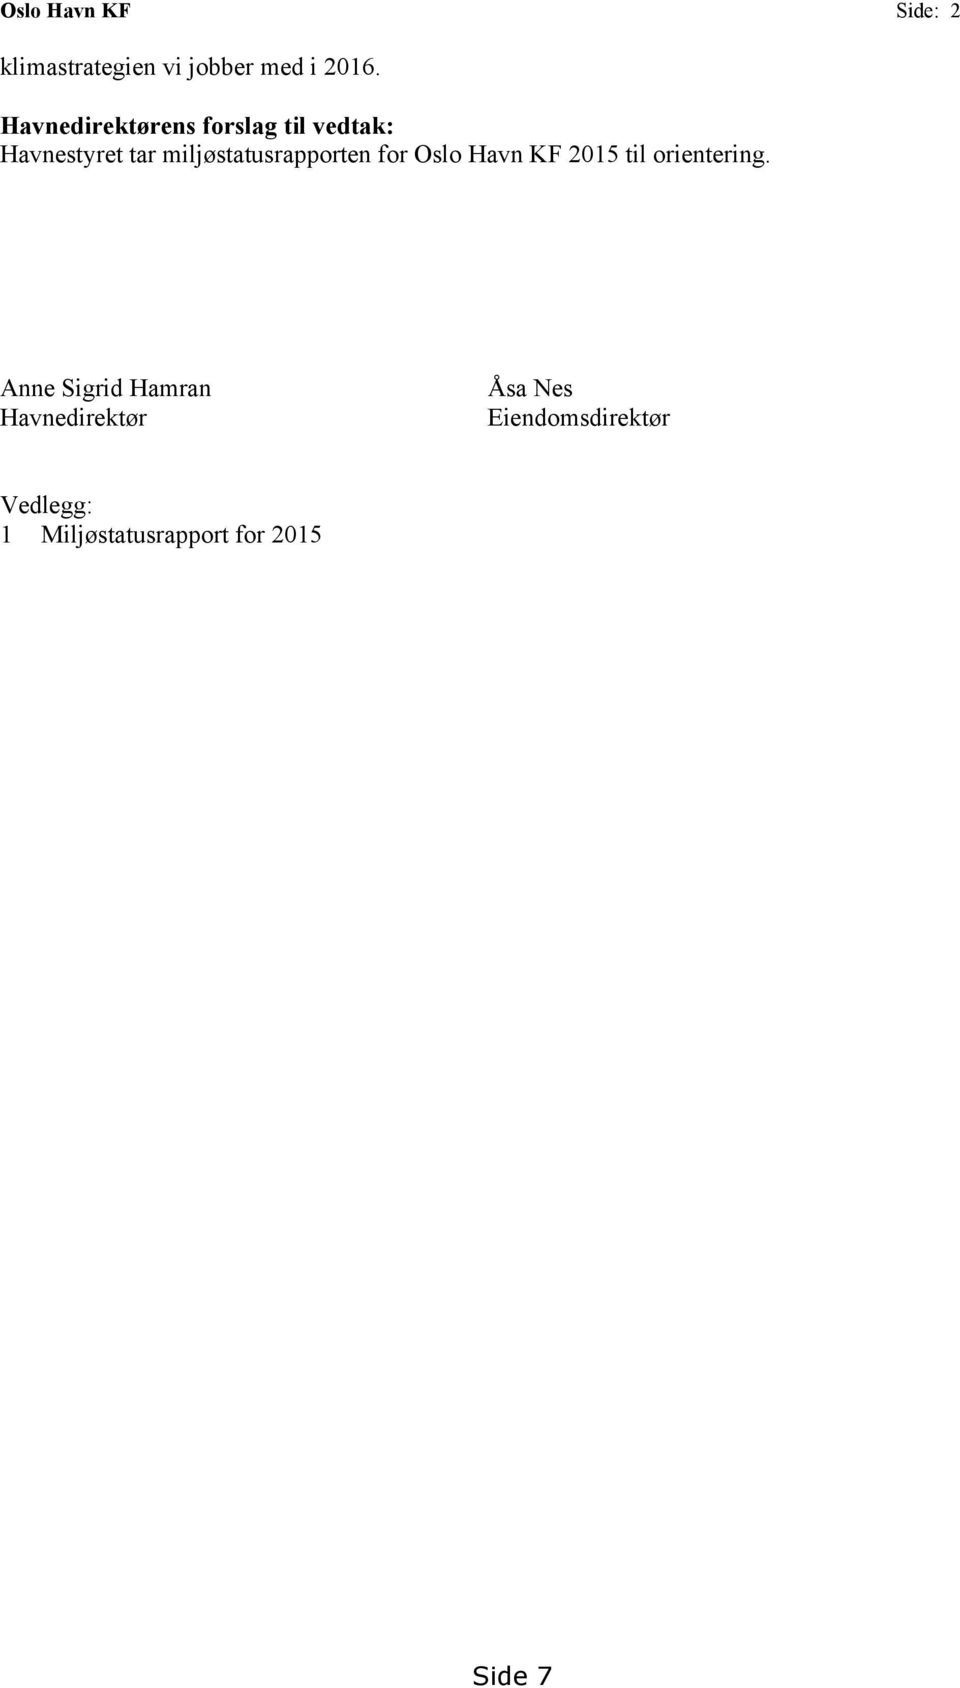 miljøstatusrapporten for Oslo Havn KF 2015 til orientering.